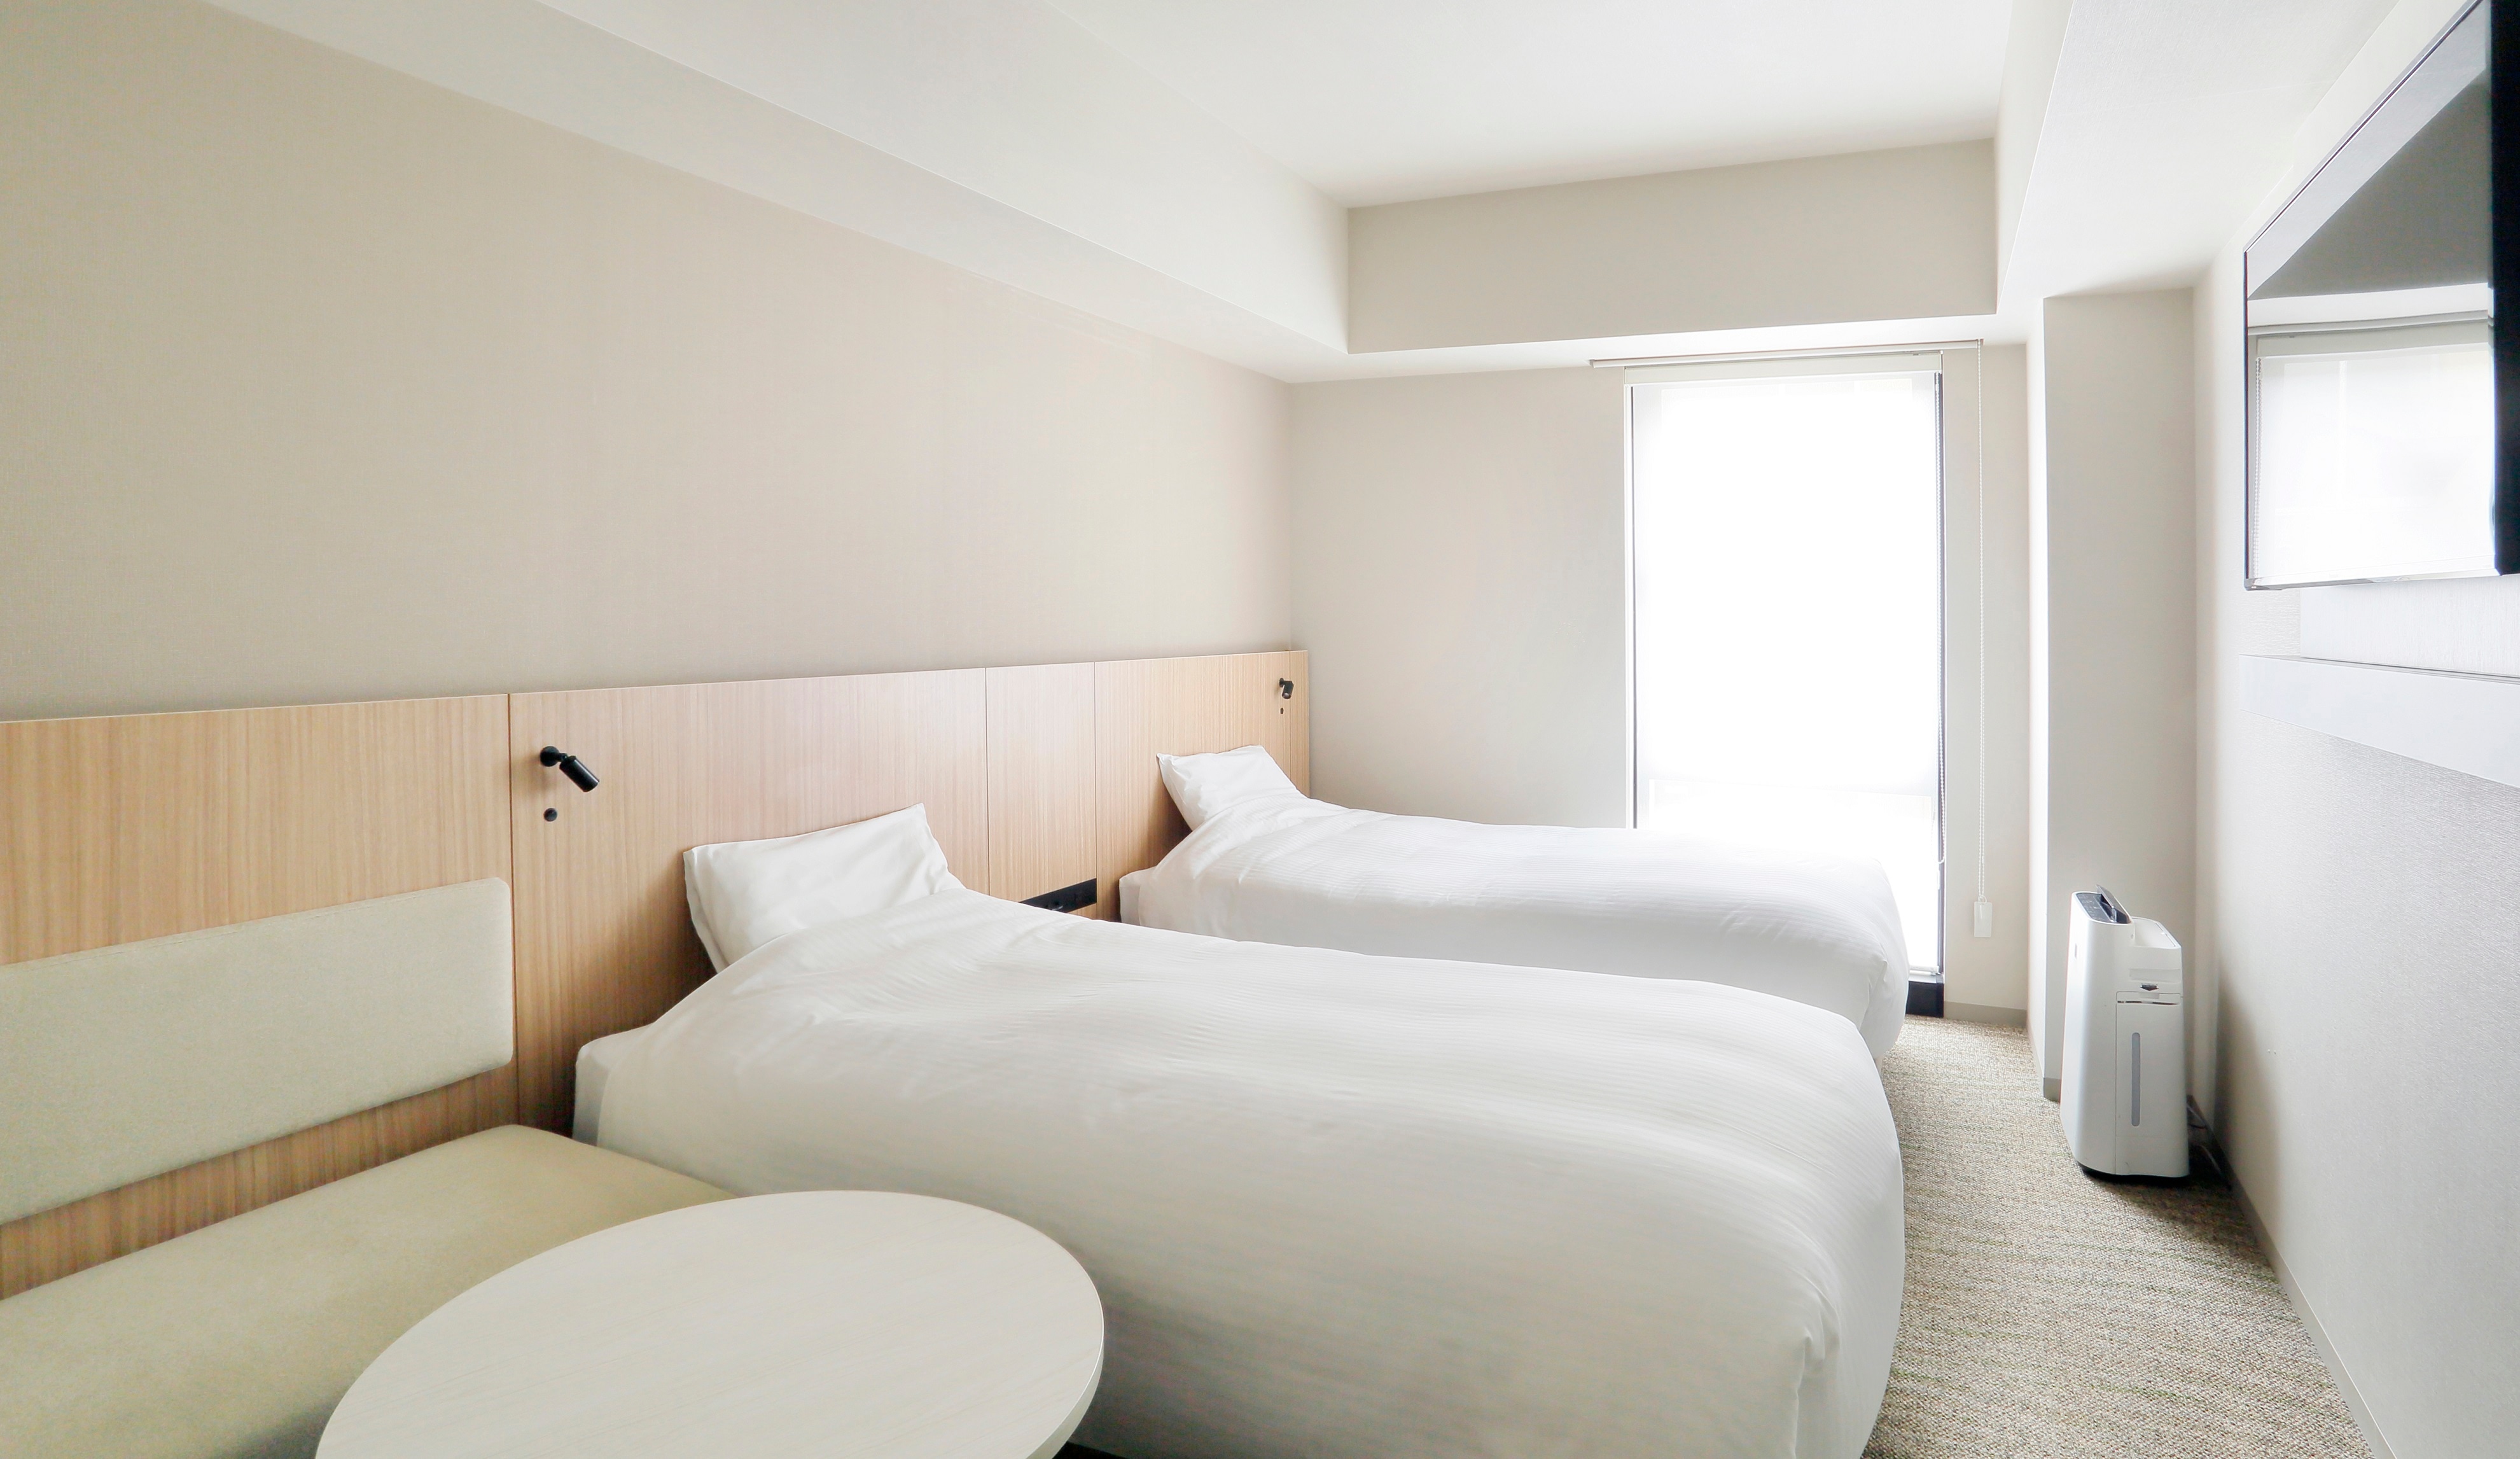 Kamar Twin 20㎡ Lebar 110cm dengan 2 tempat tidur, ideal untuk bepergian bersama pasangan dan teman